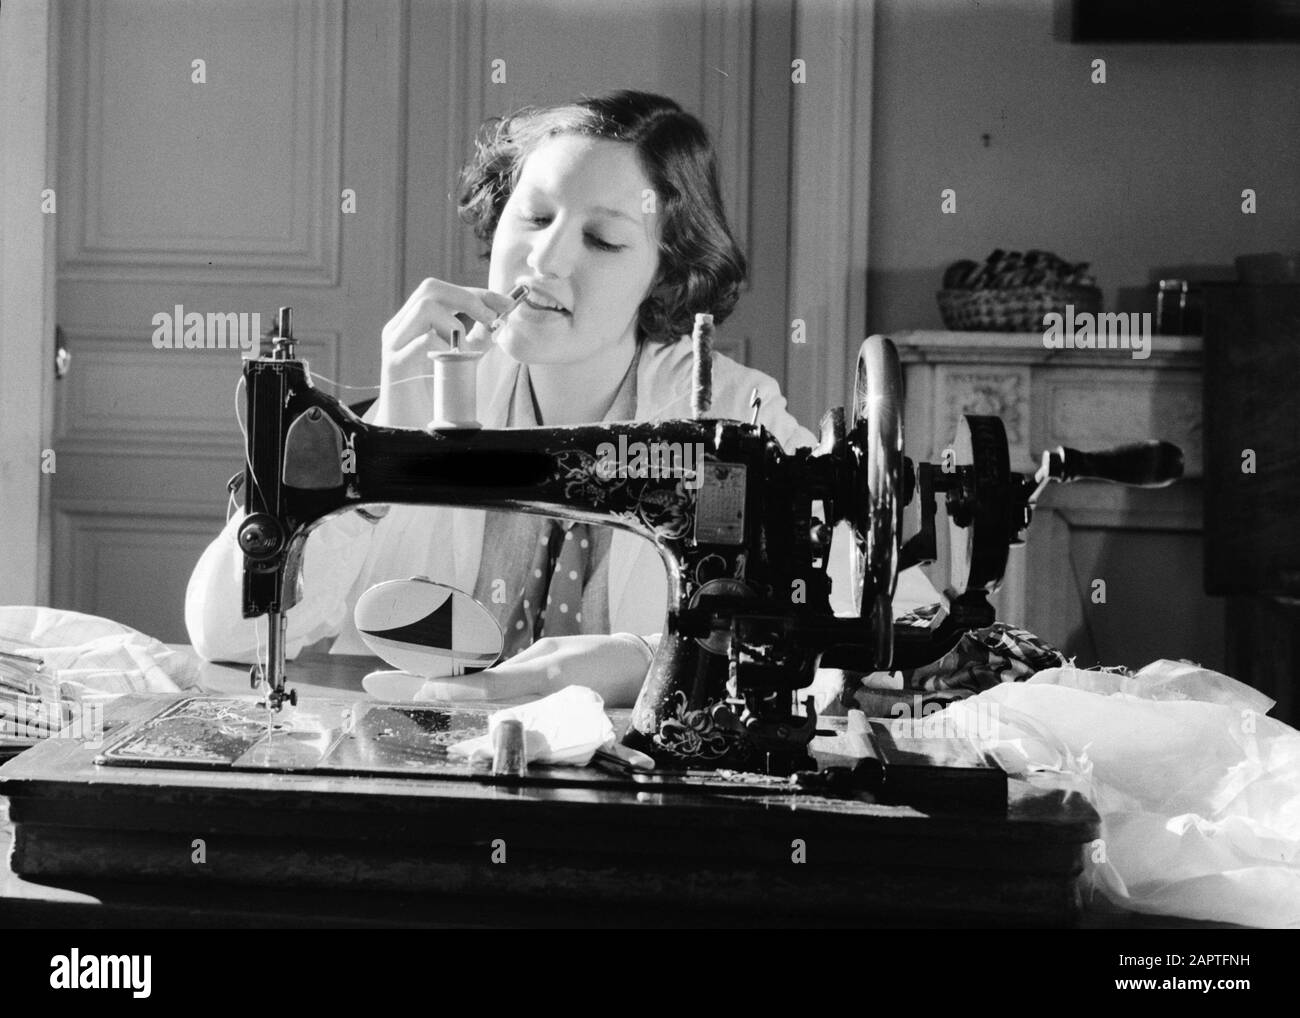 Midinettes [Hans en Renée] Hans detrás de una máquina de coser anotación:  Hans en Renée son las hijas de Van de Poll Fecha: 1937 ubicación: Francia,  París palabras clave: Coupéuses, máquinas de